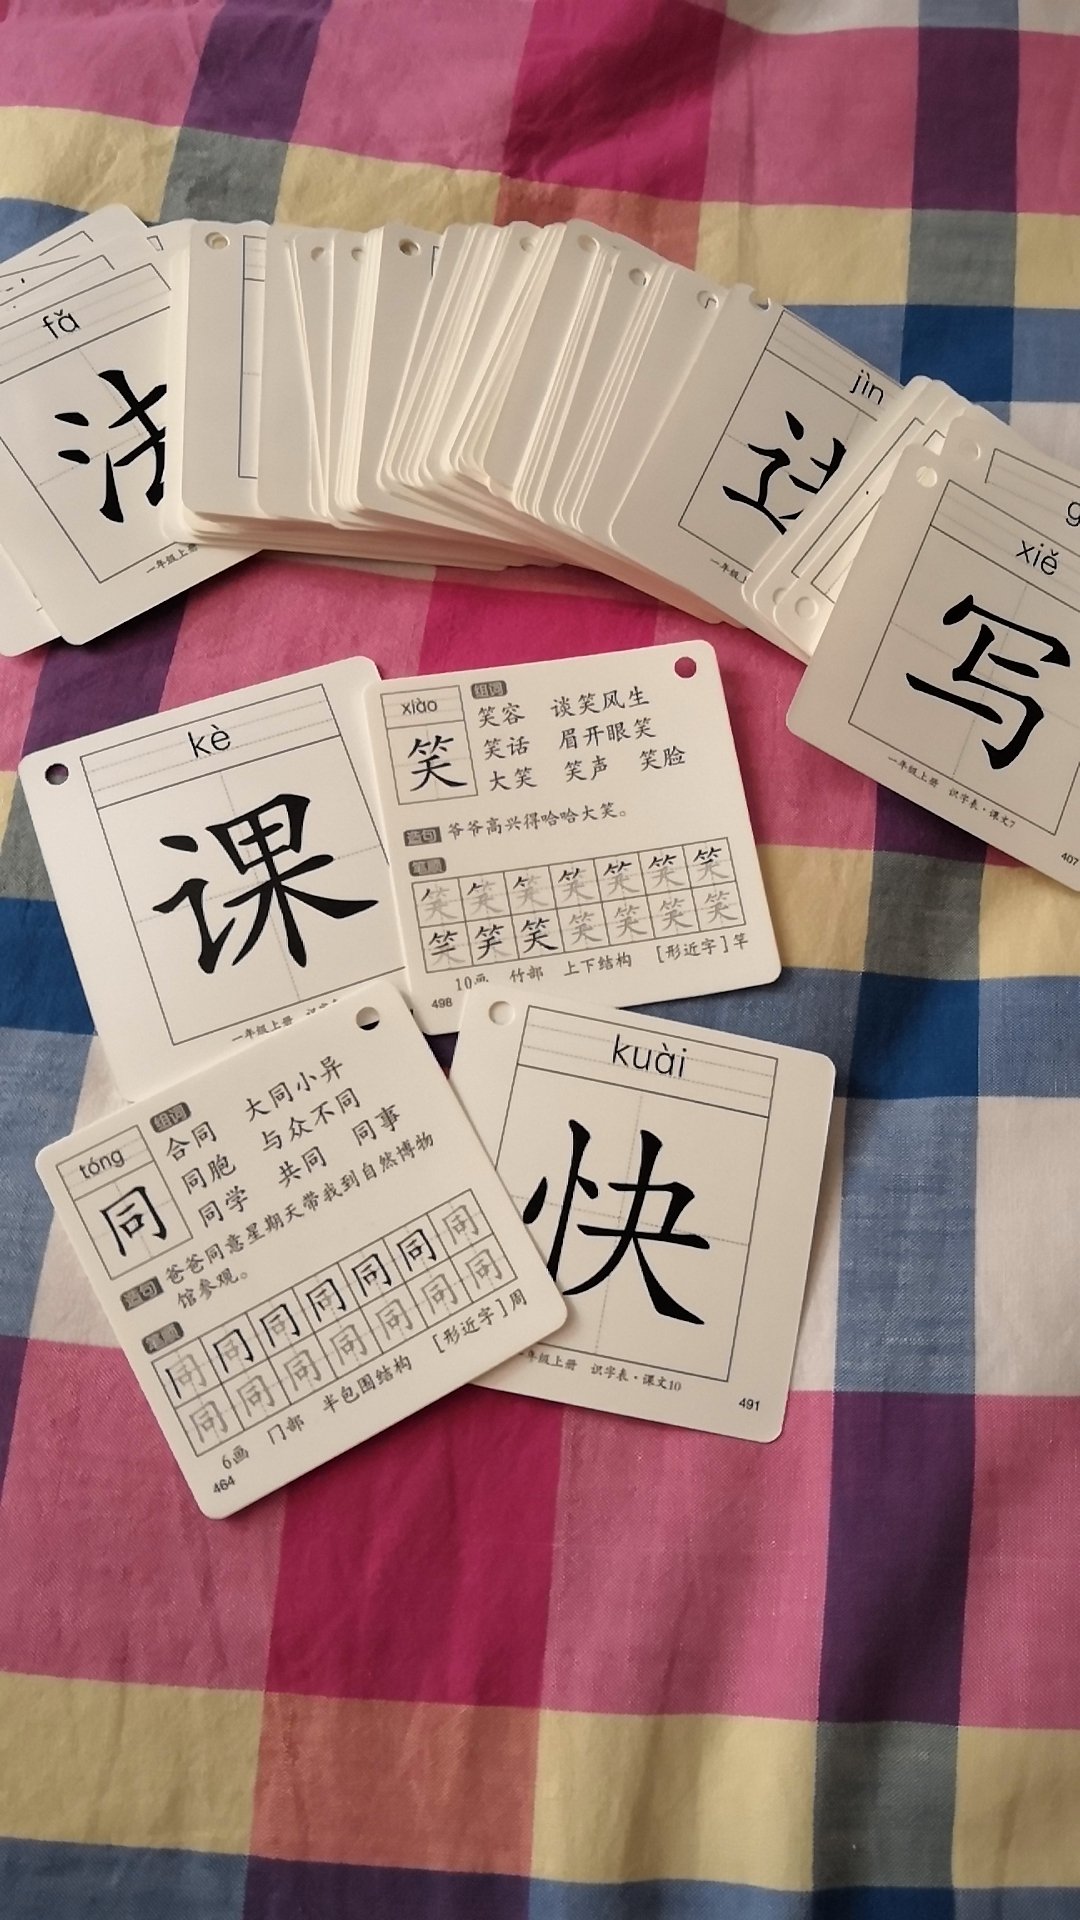 识字卡片整体设计不错，不仅仅有汉子与汉语拼音，背面还有组词、造句、笔画、笔顺及形近字，很适合4--6岁孩子的学习指导。    但是质量还要改进，发给我们的卡片里面有不少卡片的孔打歪打坏了（二图），让我们无法穿环上使用，有些不满意！